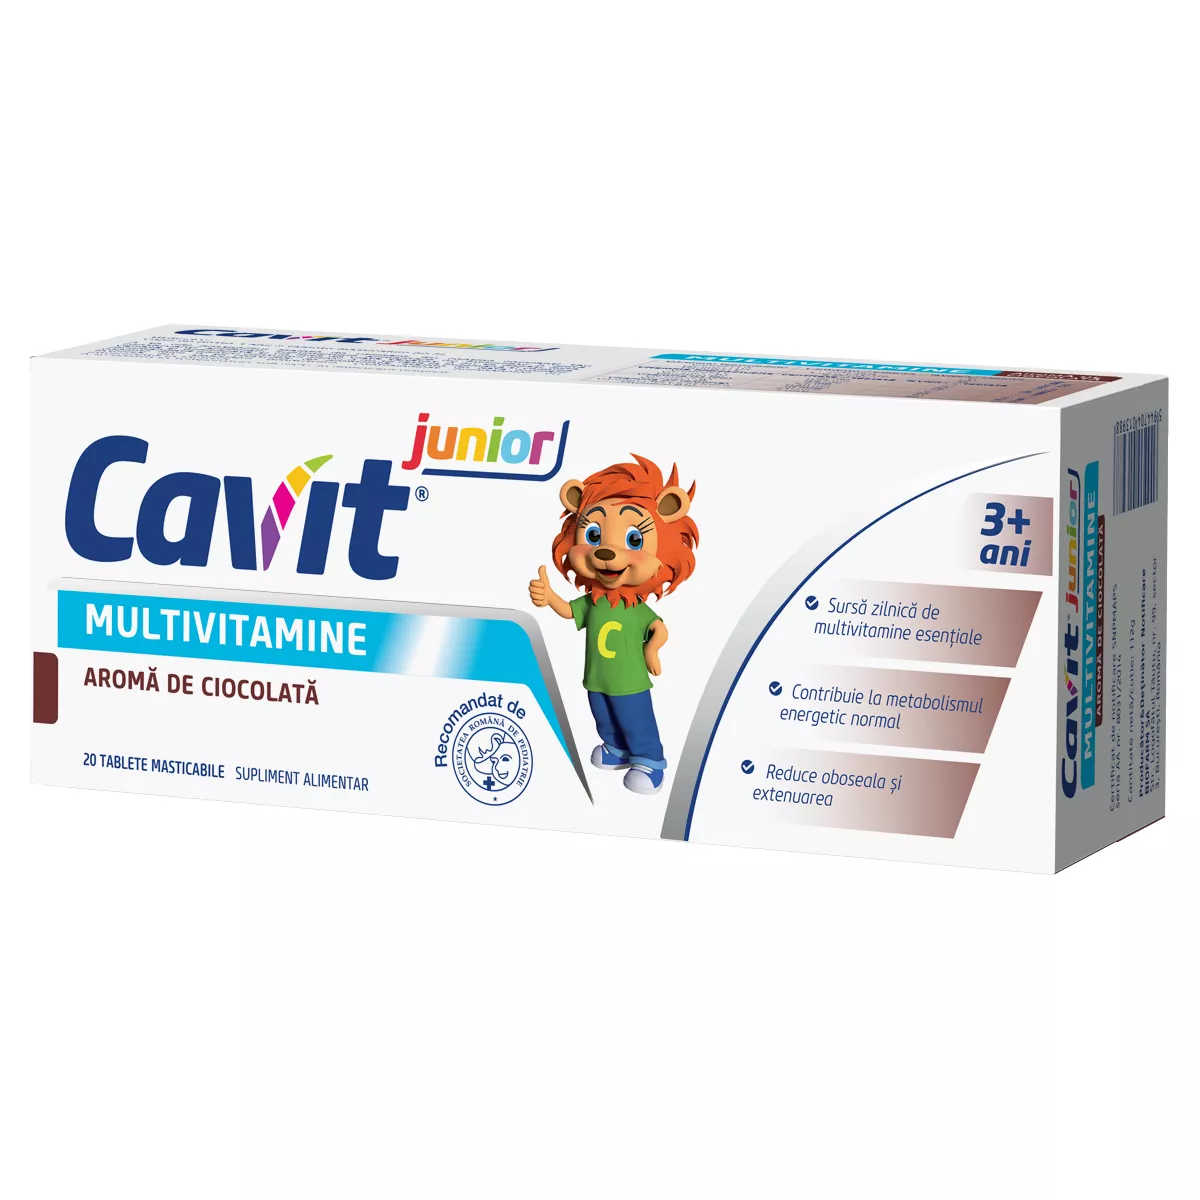 Cavit Junior multivitamine cu aroma de ciocolată, 20 tablete, Biofarm